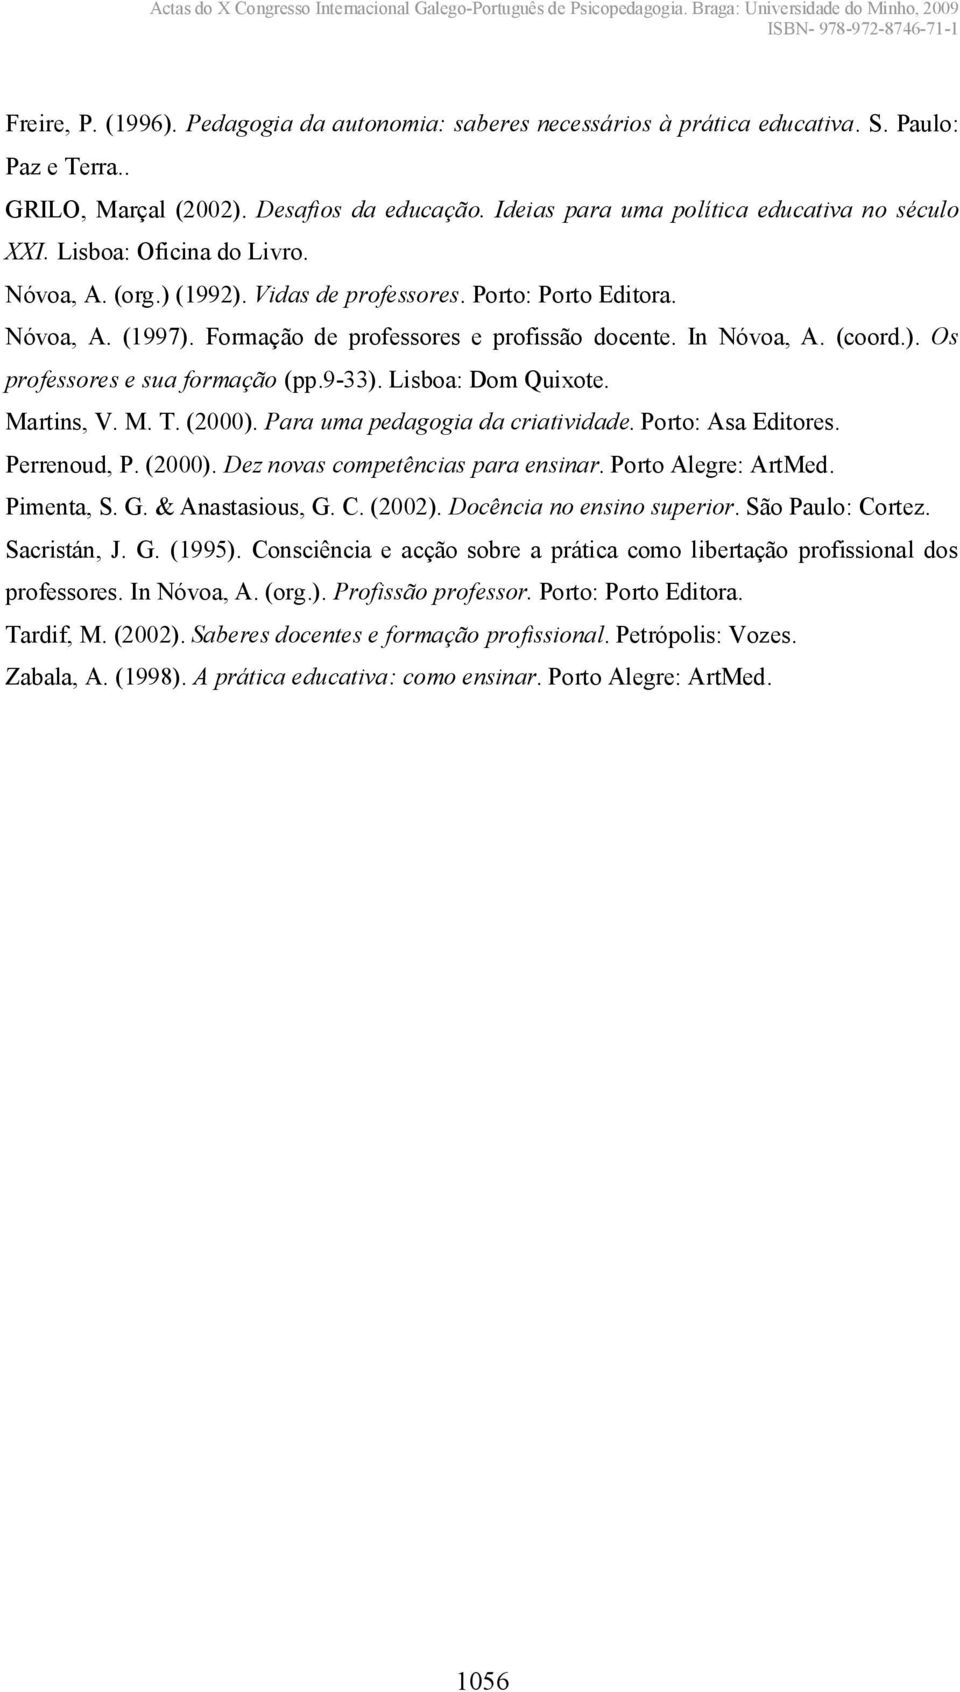 Formação de professores e profissão docente. In Nóvoa, A. (coord.). Os professores e sua formação (pp.9-33). Lisboa: Dom Quixote. Martins, V. M. T. (2000). Para uma pedagogia da criatividade.